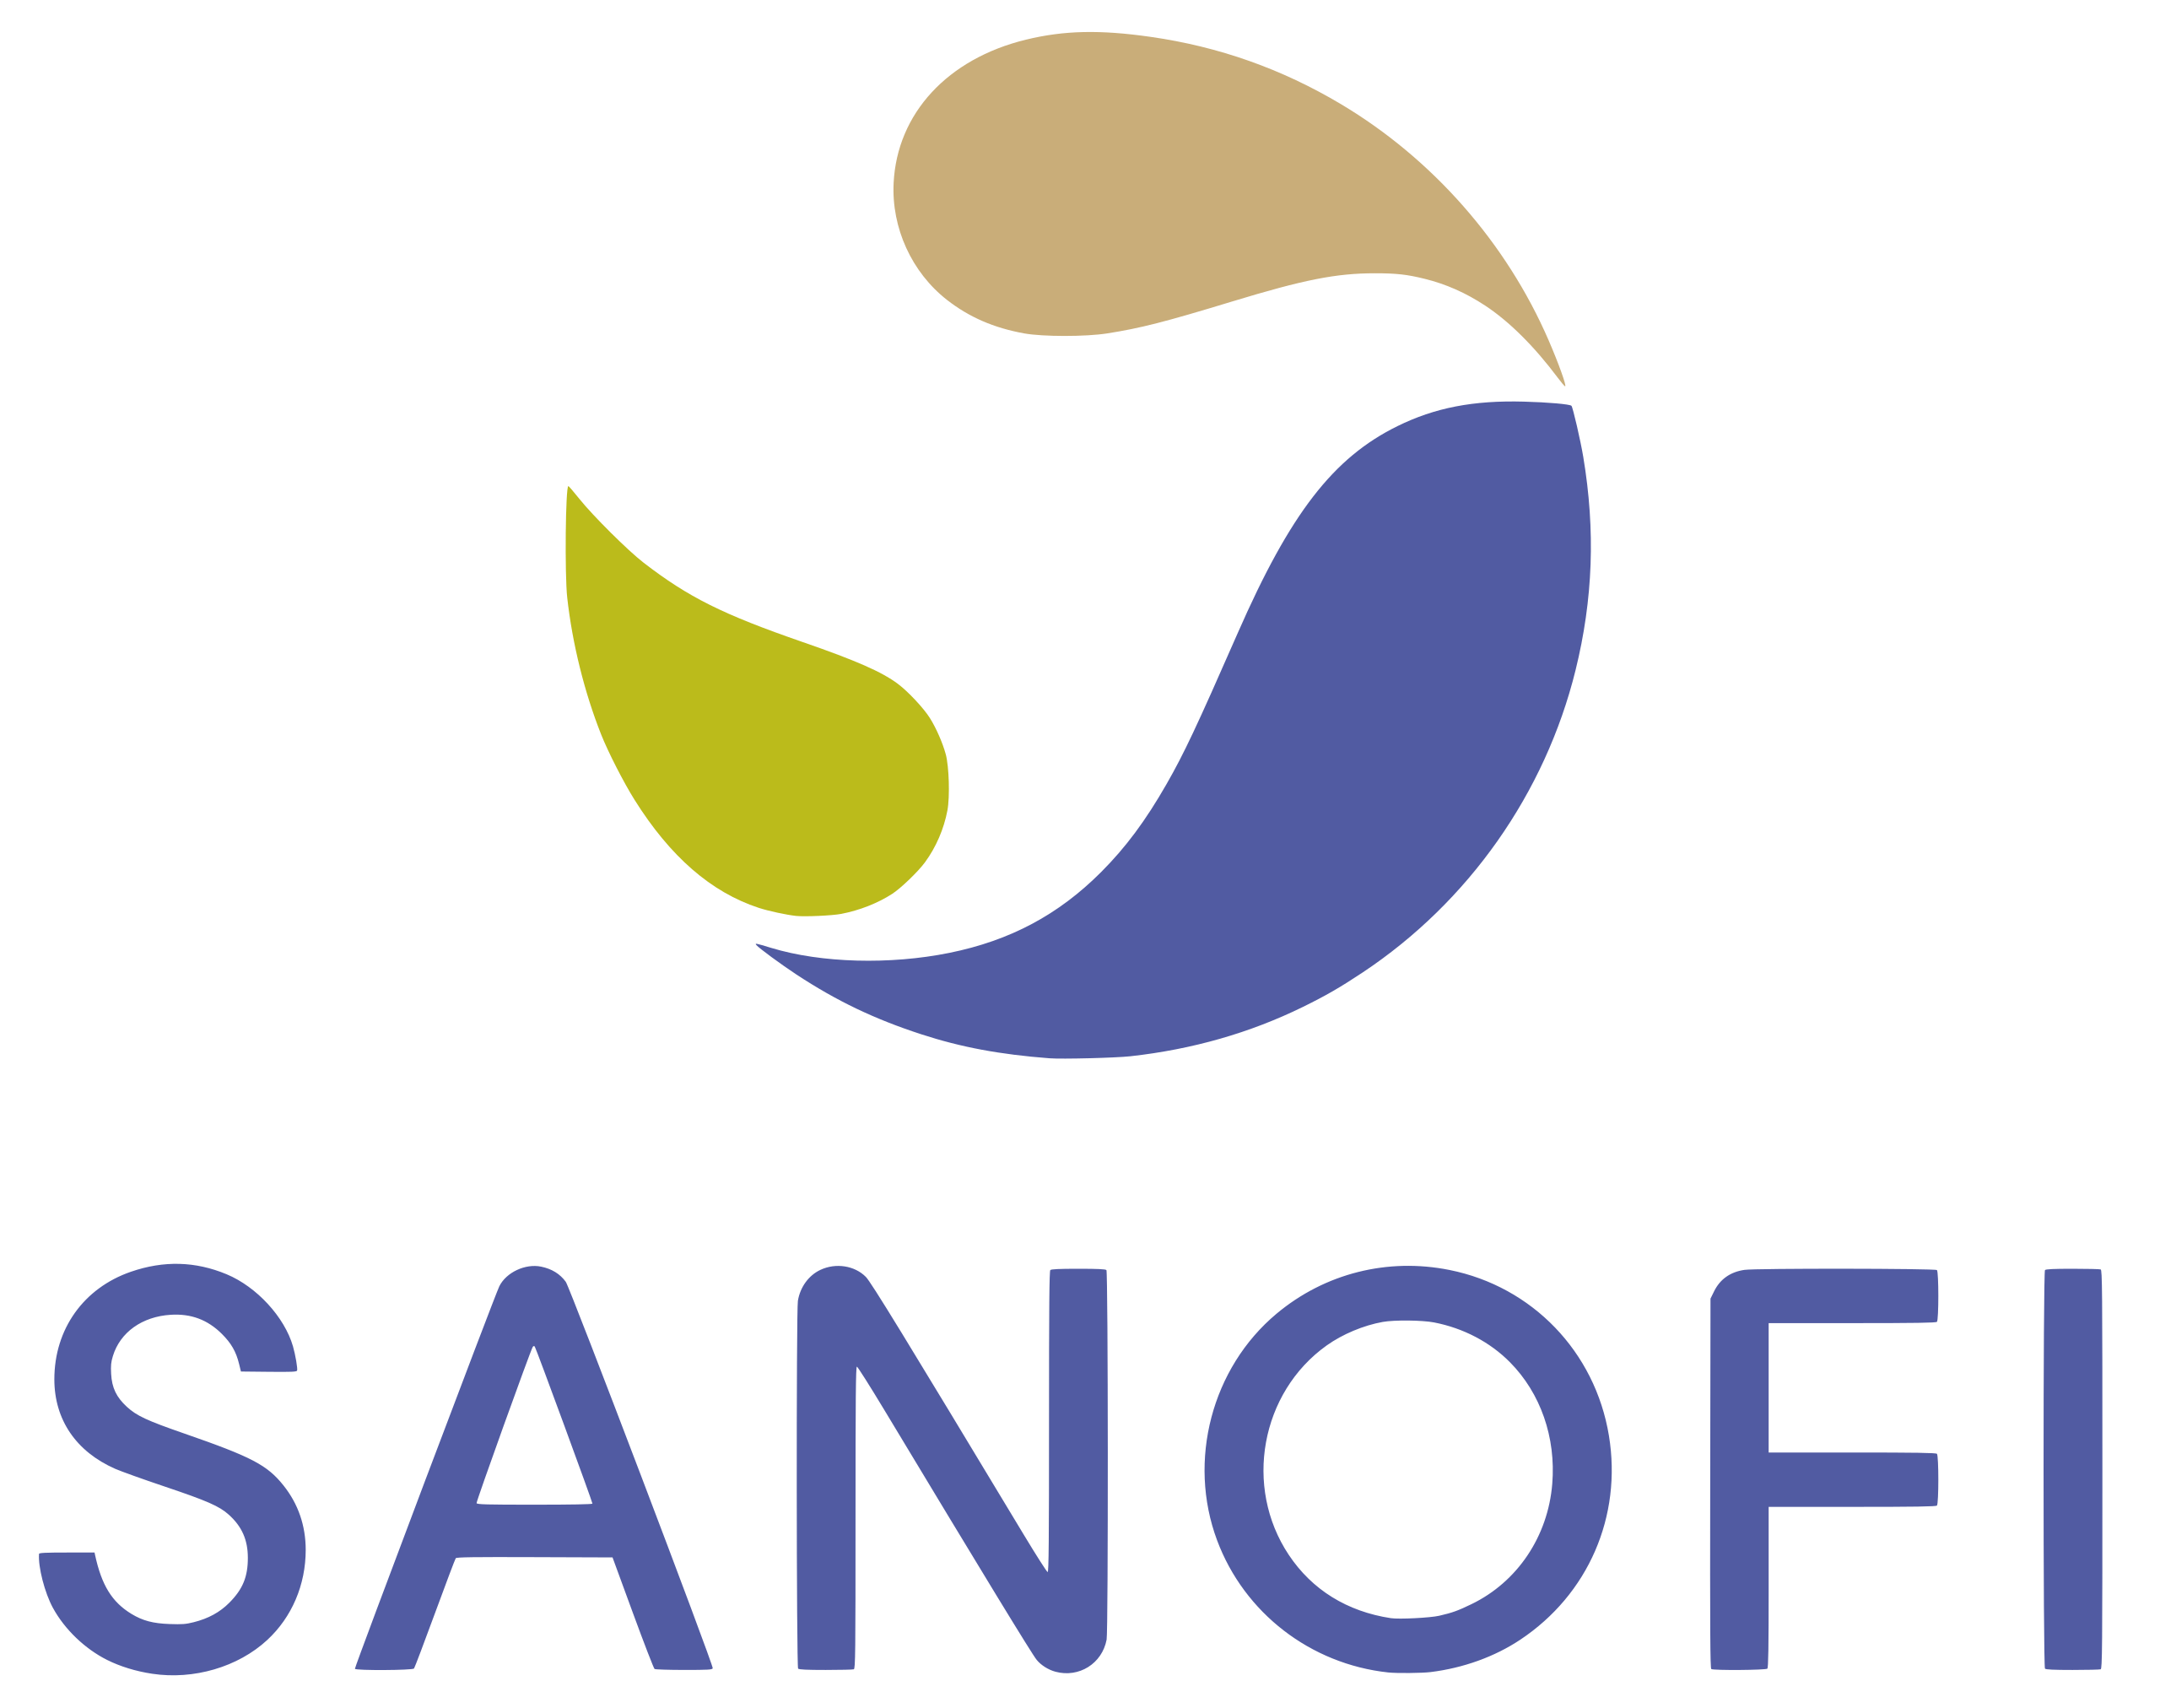 2560px-Sanofi_logo.svg